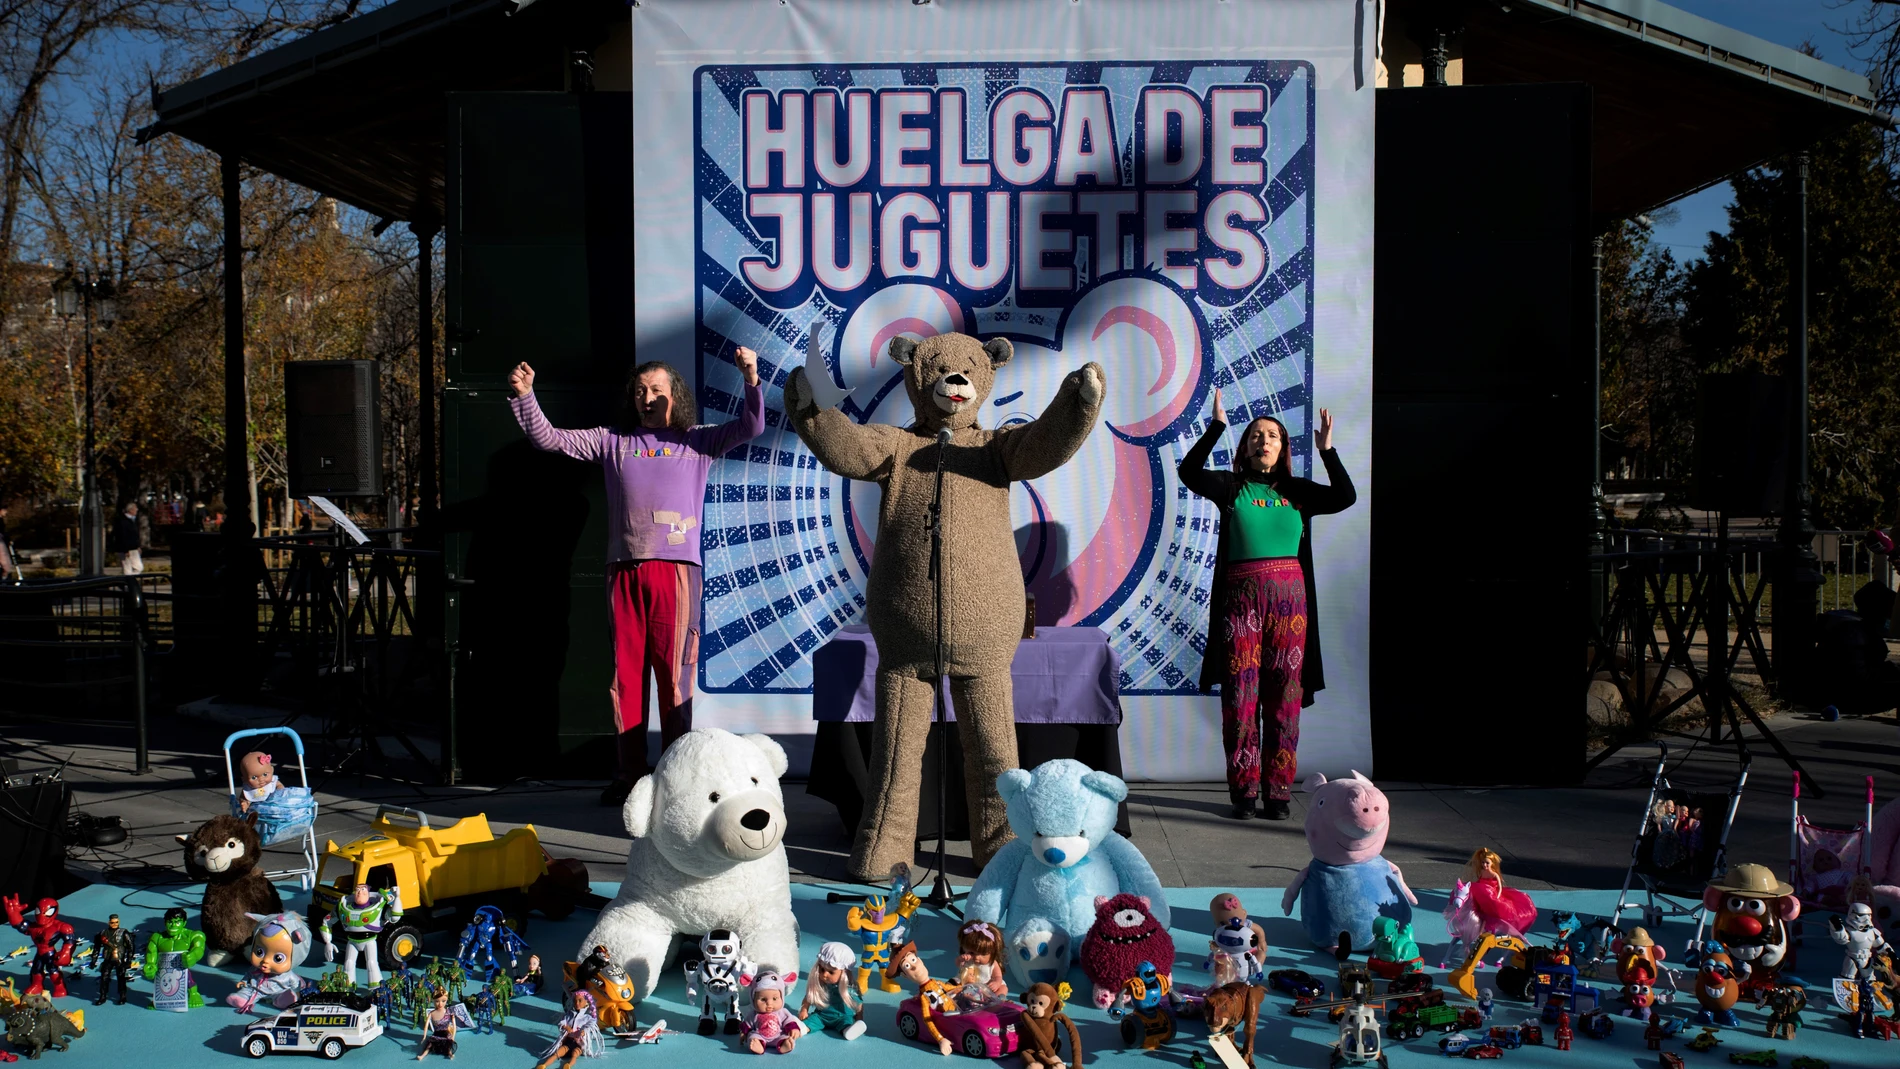 El parque del Retiro de Madrid acoge este domingo una huelga simbólica de juguetes para sensibilizar sobre el sexismo en los juguetes. EFE/ Luca Piergiovanni